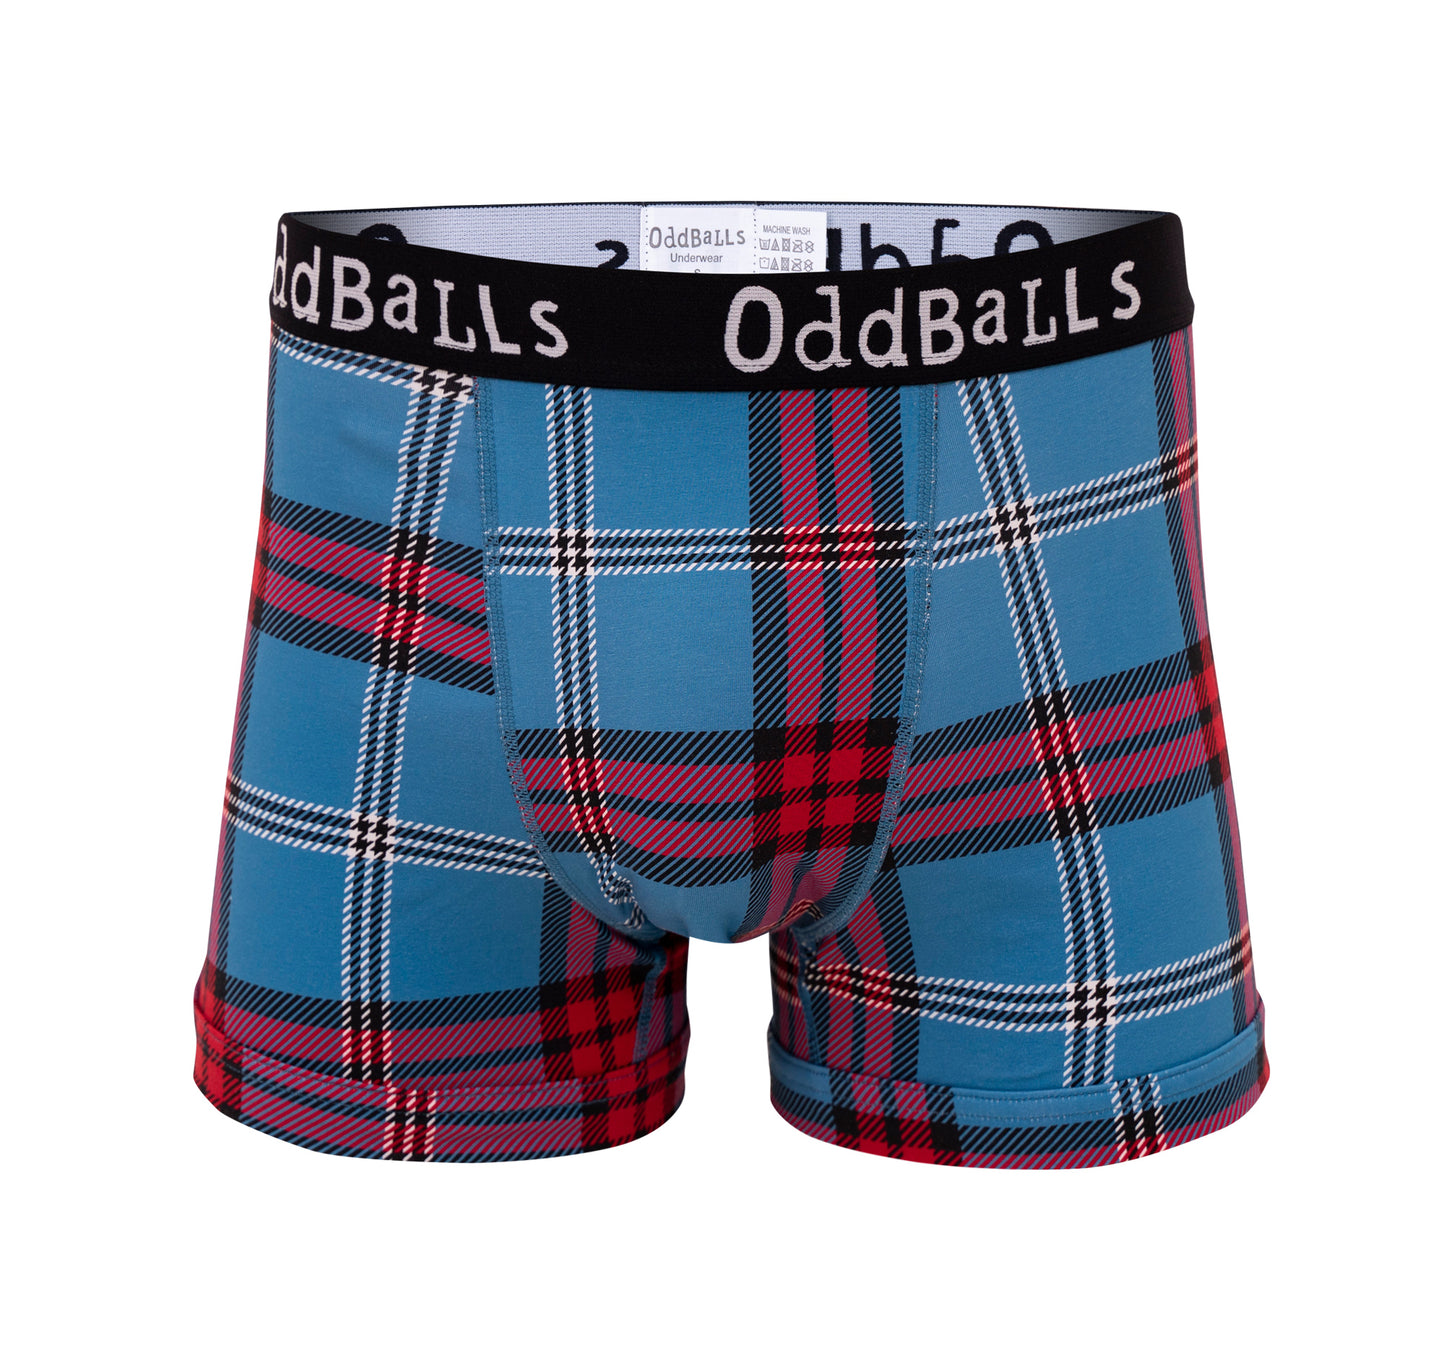 OddBalls Tartan Boxer Shorts - The University of Edinburgh – The University  of Edinburgh Gift Shop